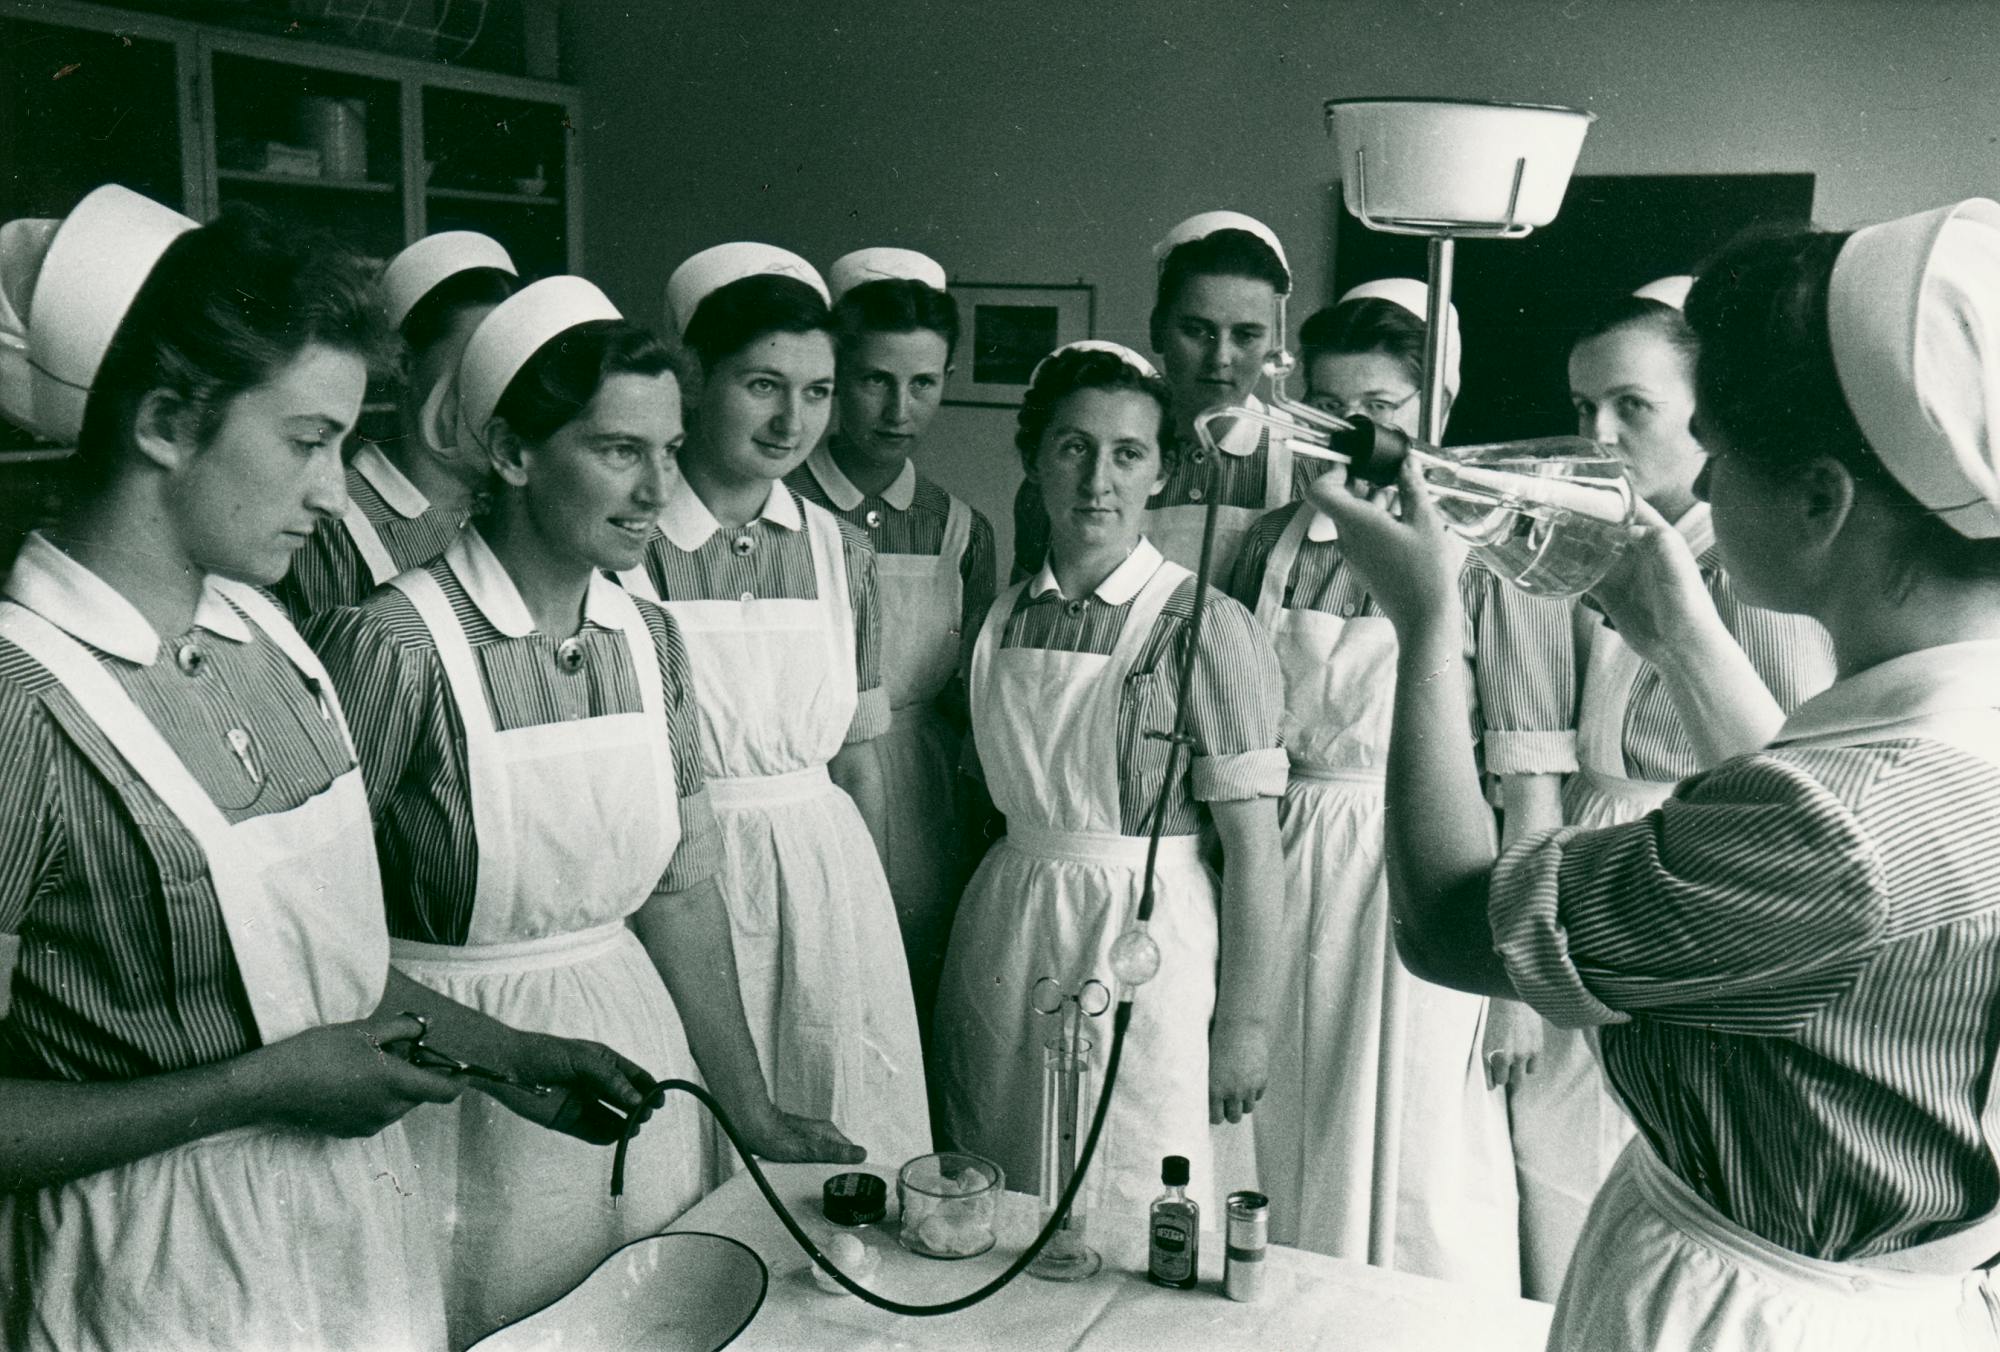 Gruppe von Krankenschwestern in traditioneller Uniform beobachtet medizinische Demonstration, Schwarz-Weiß-Fotografie.